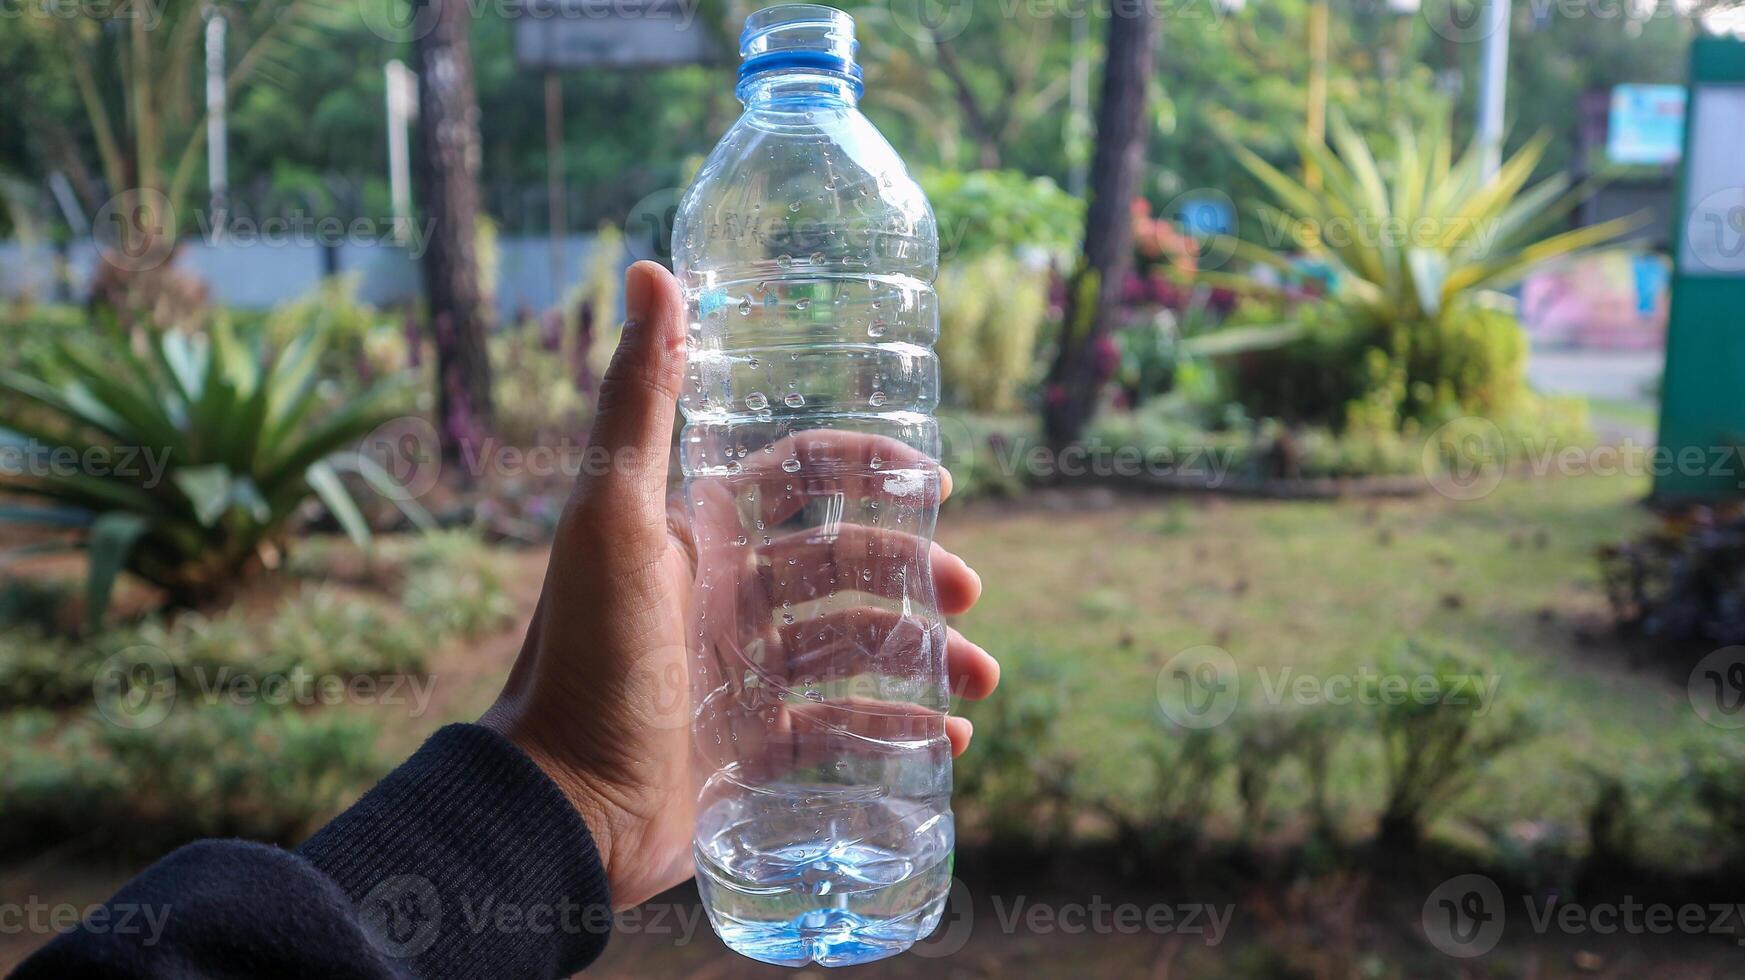 vrouw handen Holding leeg plastic flessen- detailopname foto